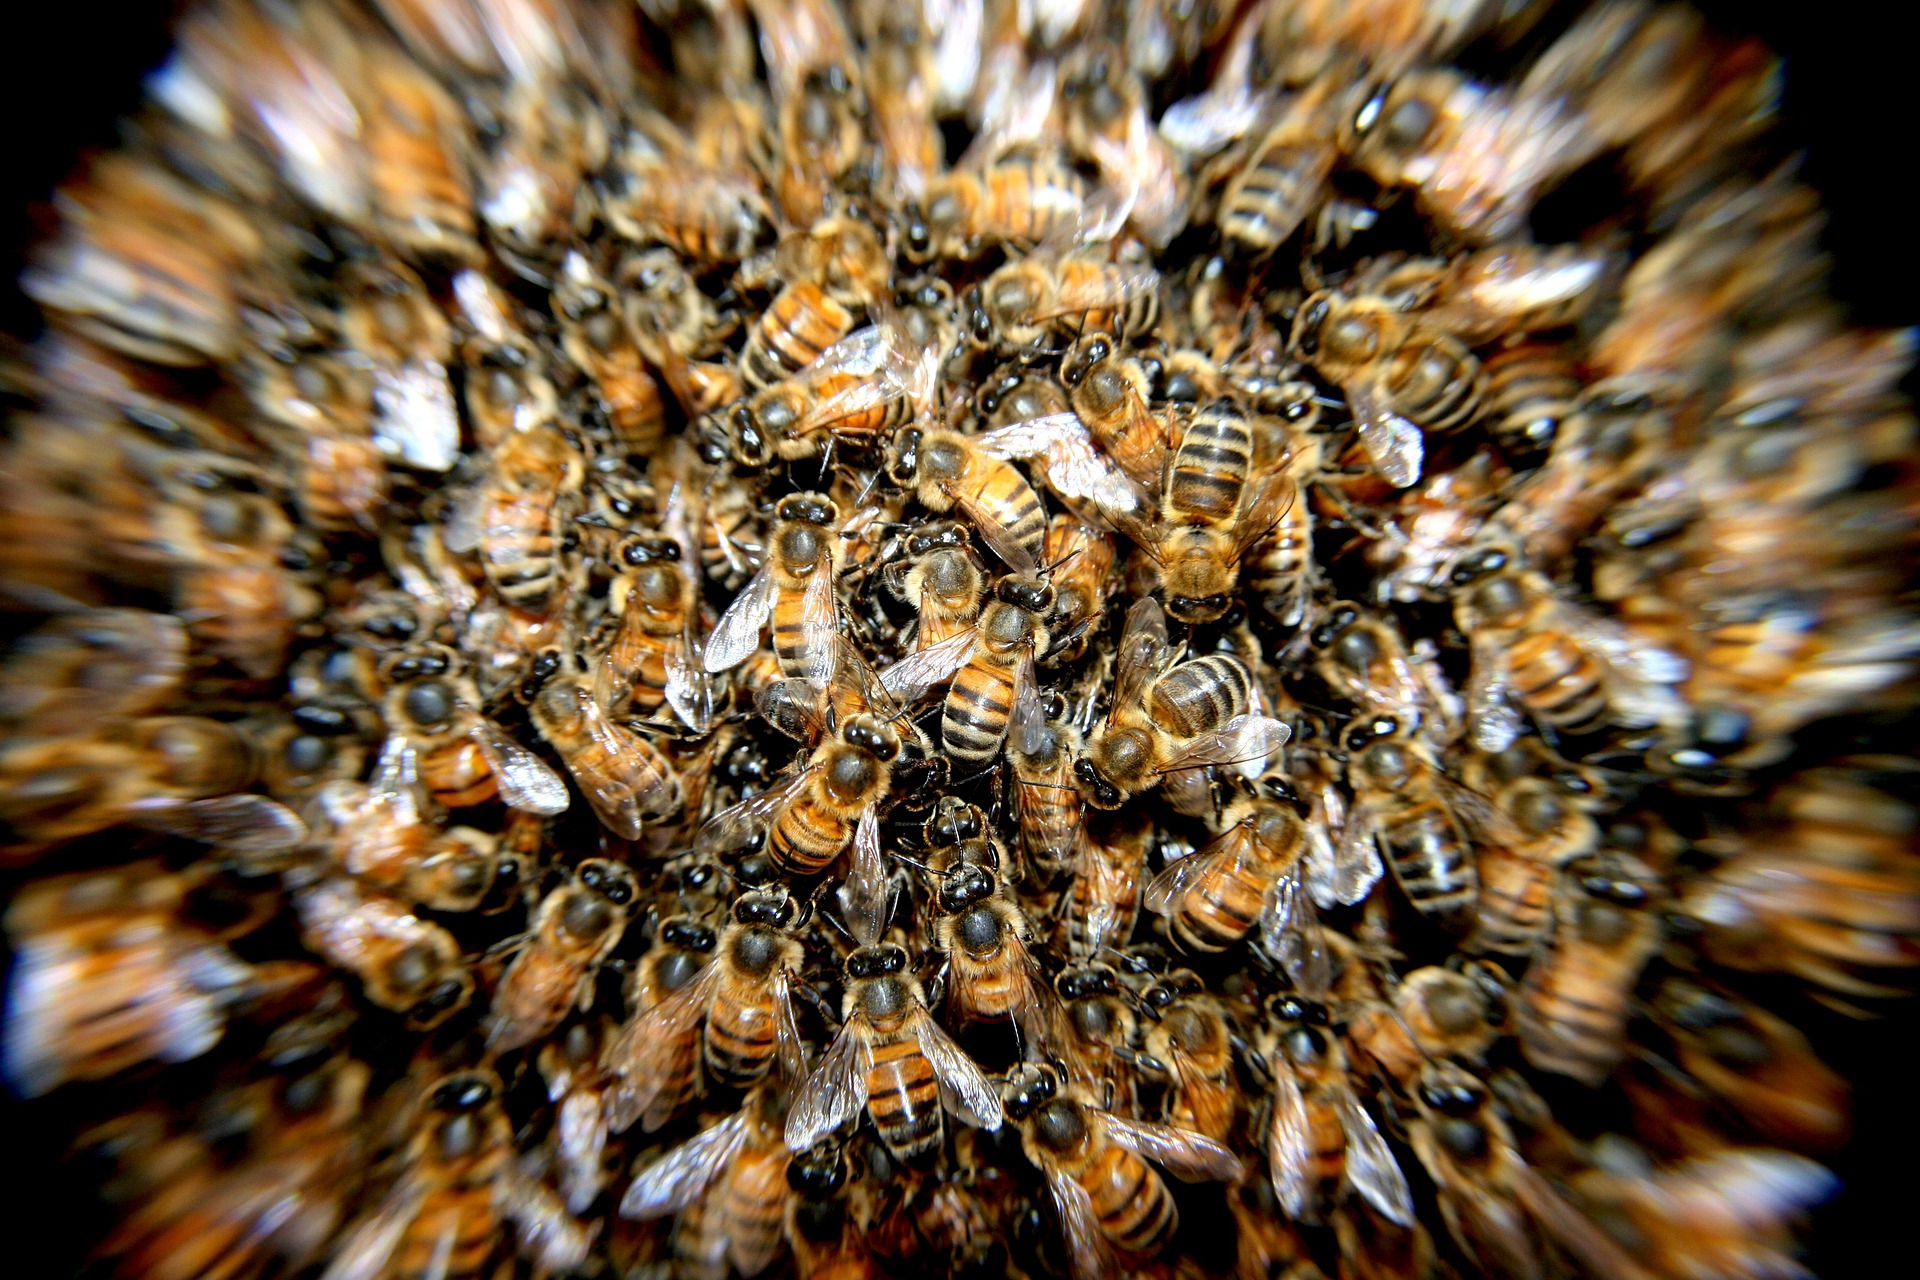 Savremeni pesticidi oštećuju mozak pčela tako da se one ne mogu kretati pravolinijski